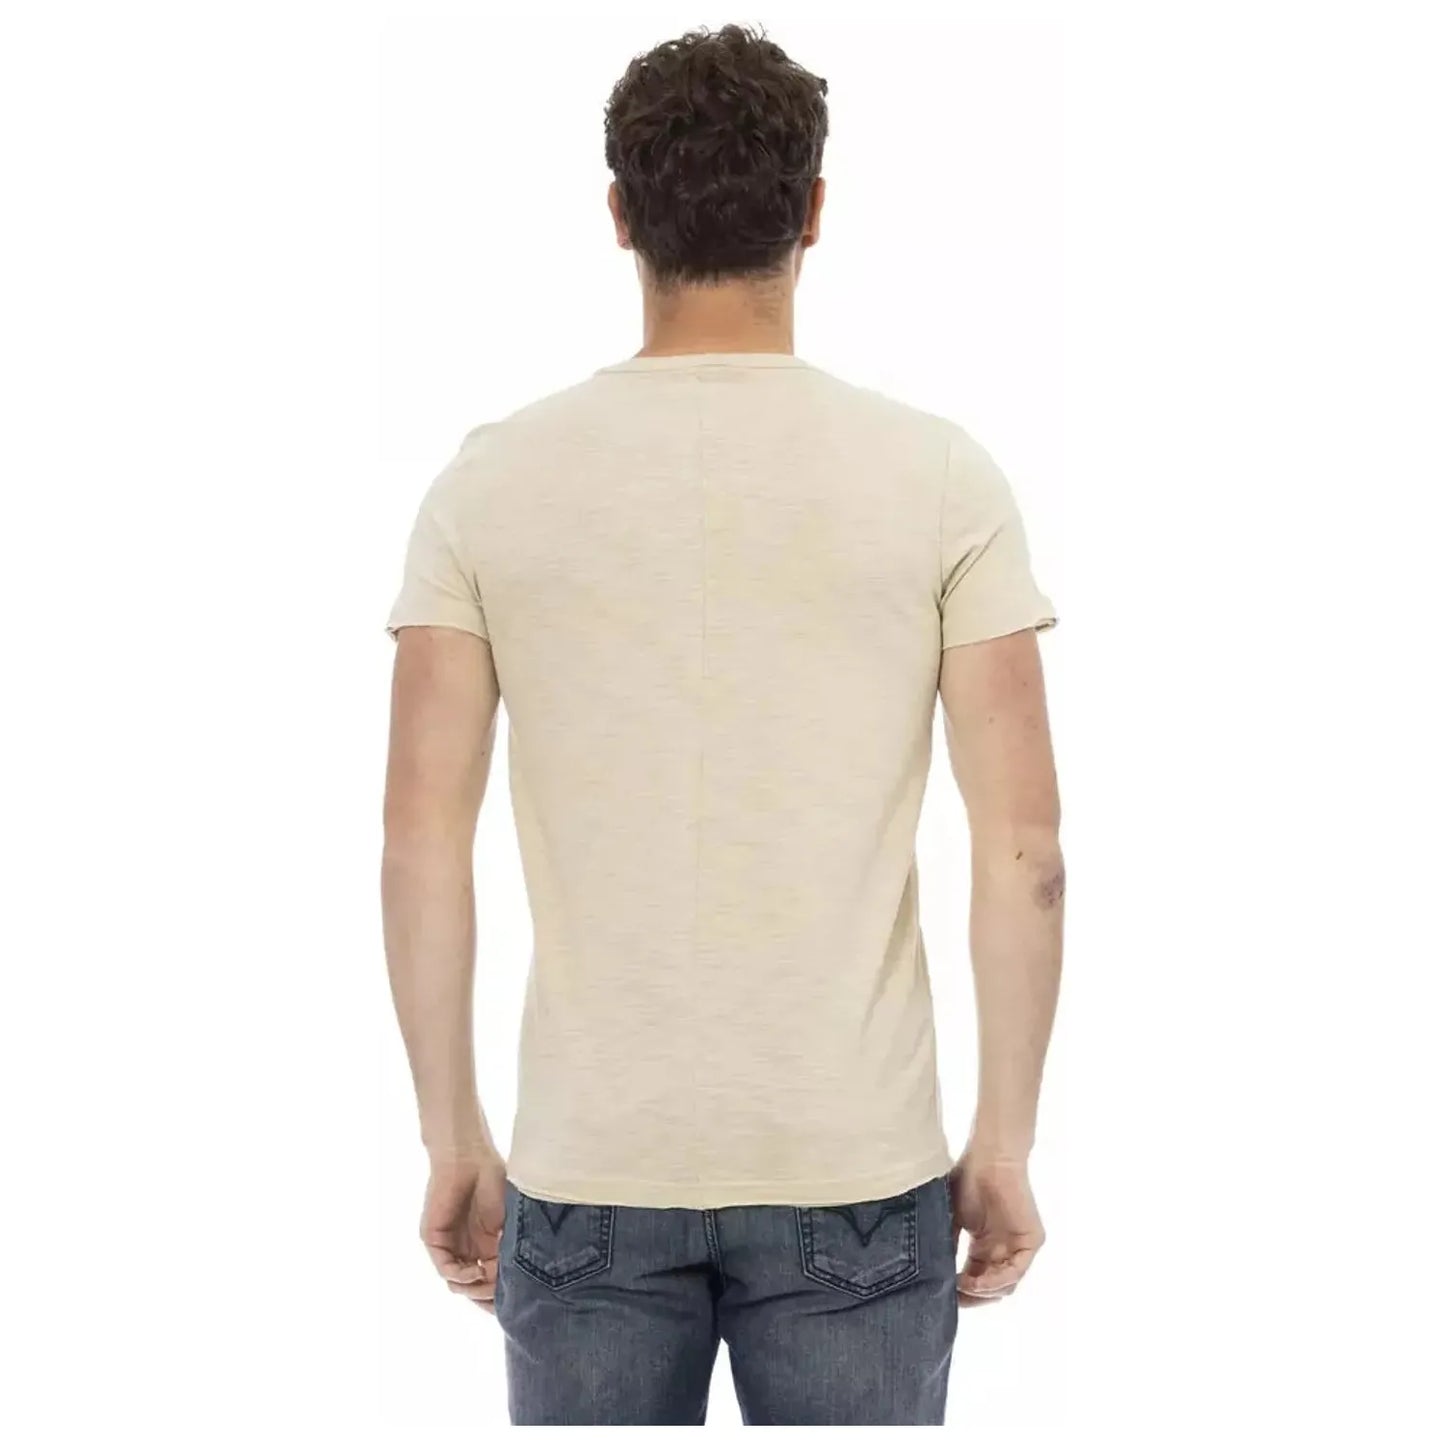 Trussardi Action Beige Chest Pocket Tee - Casual Elegance beige-cotton-t-shirt-20